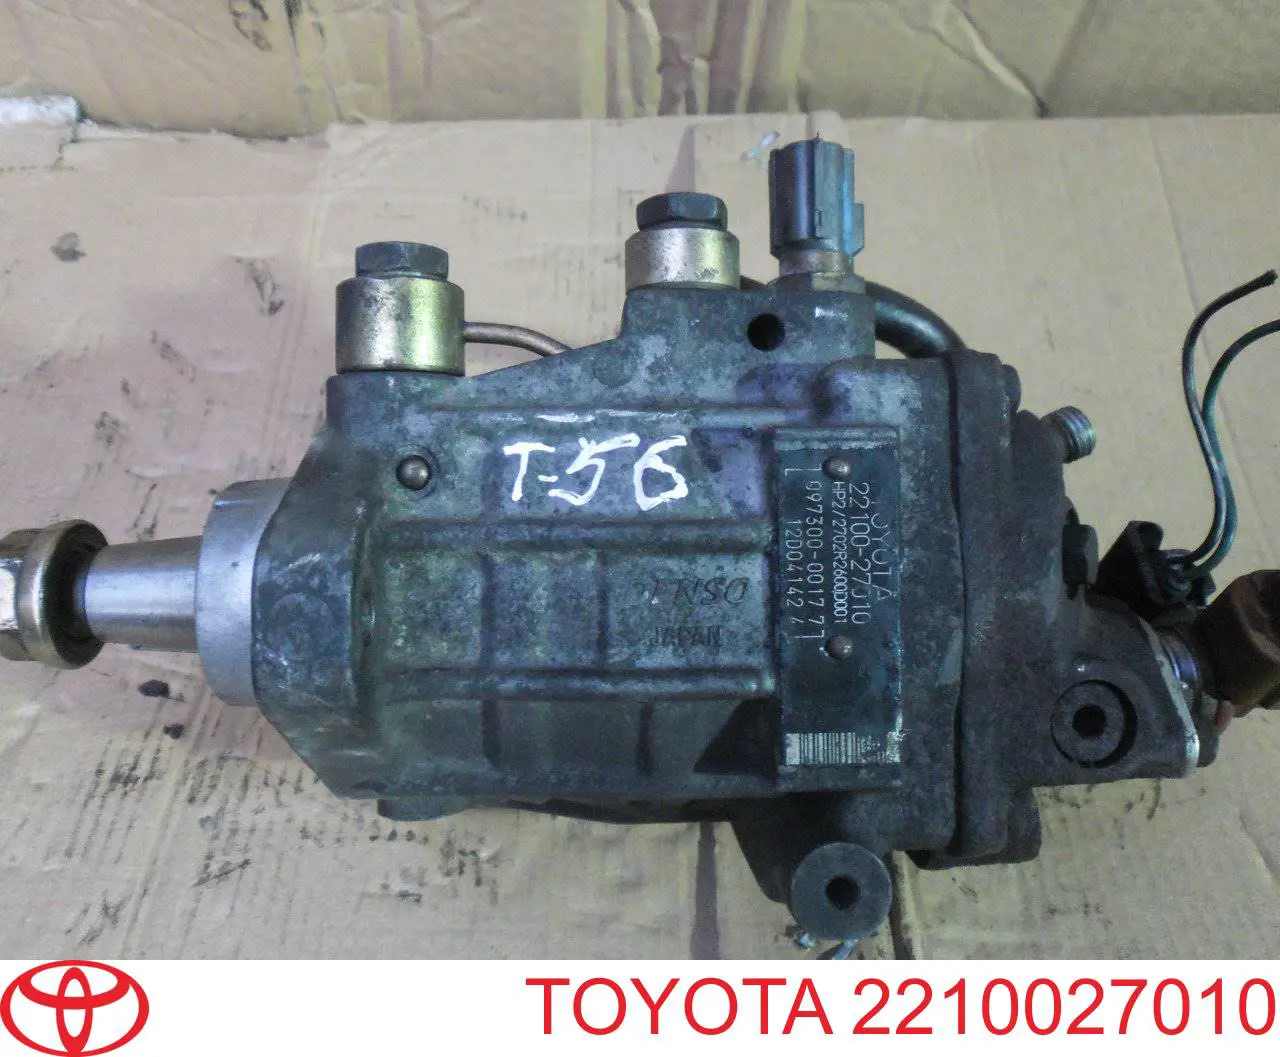 Топливный насос высокого давления Тойота Королла E12 (Toyota Corolla)